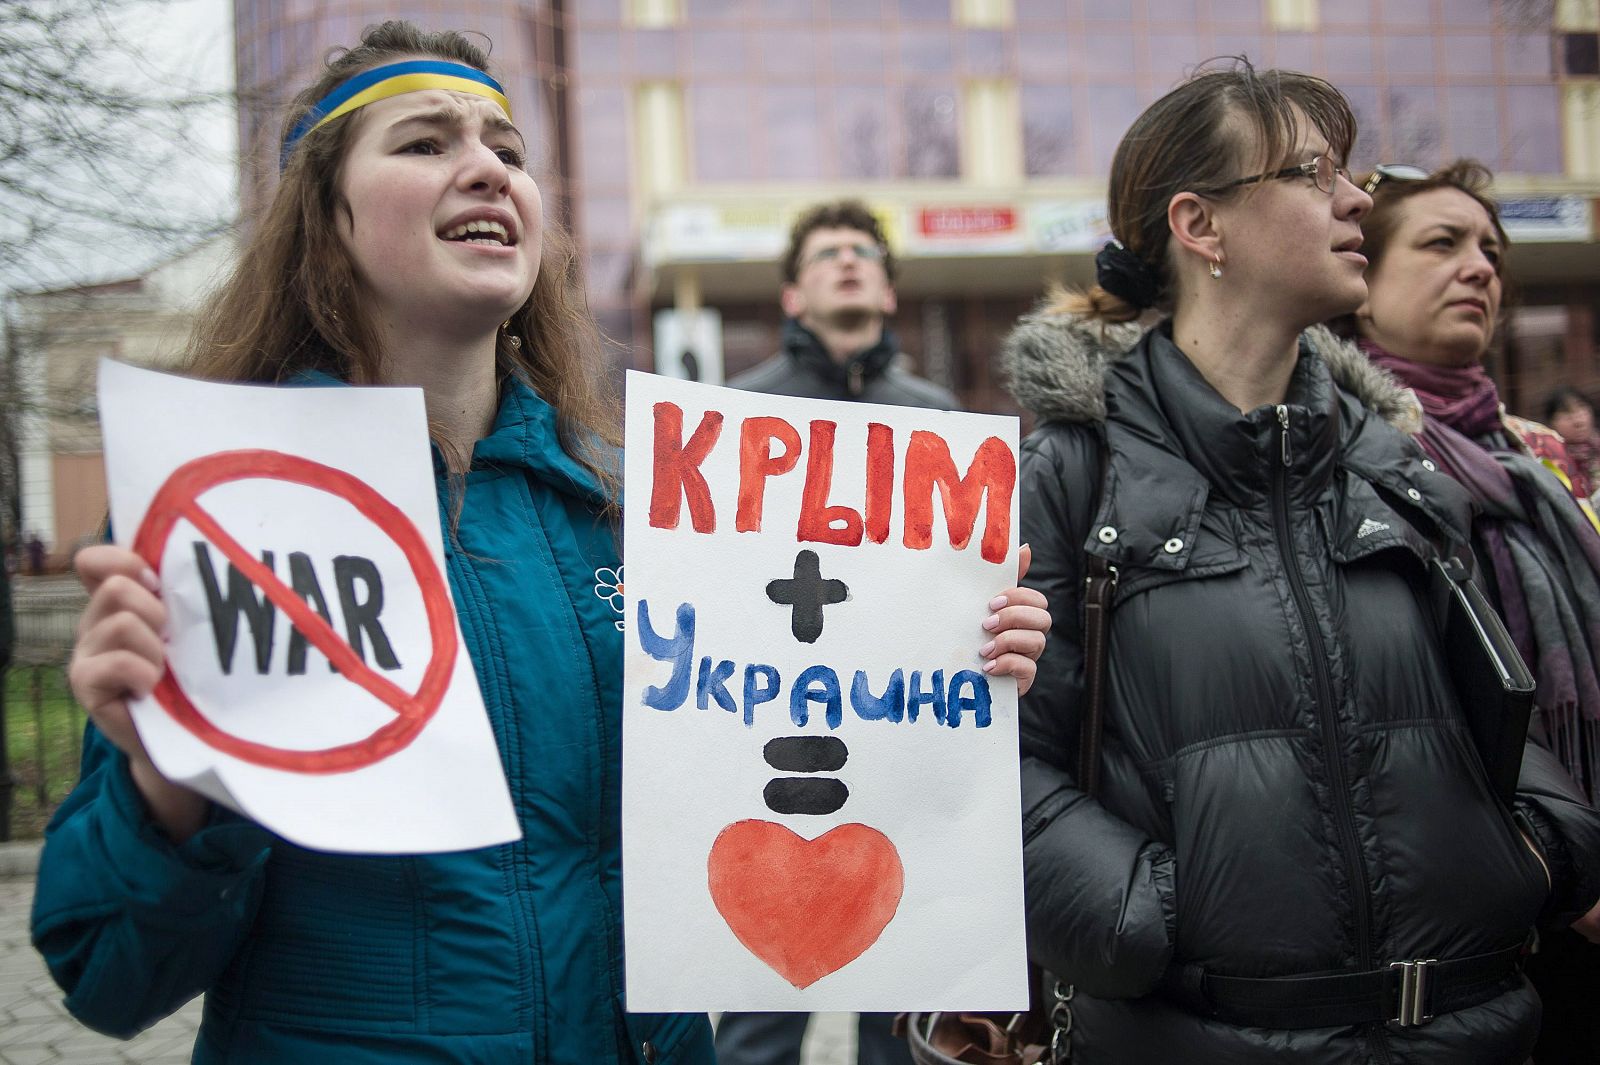 Una joven muestra una pancarta en Simferopol que dice "Crimea y Ucrania igual a amor"